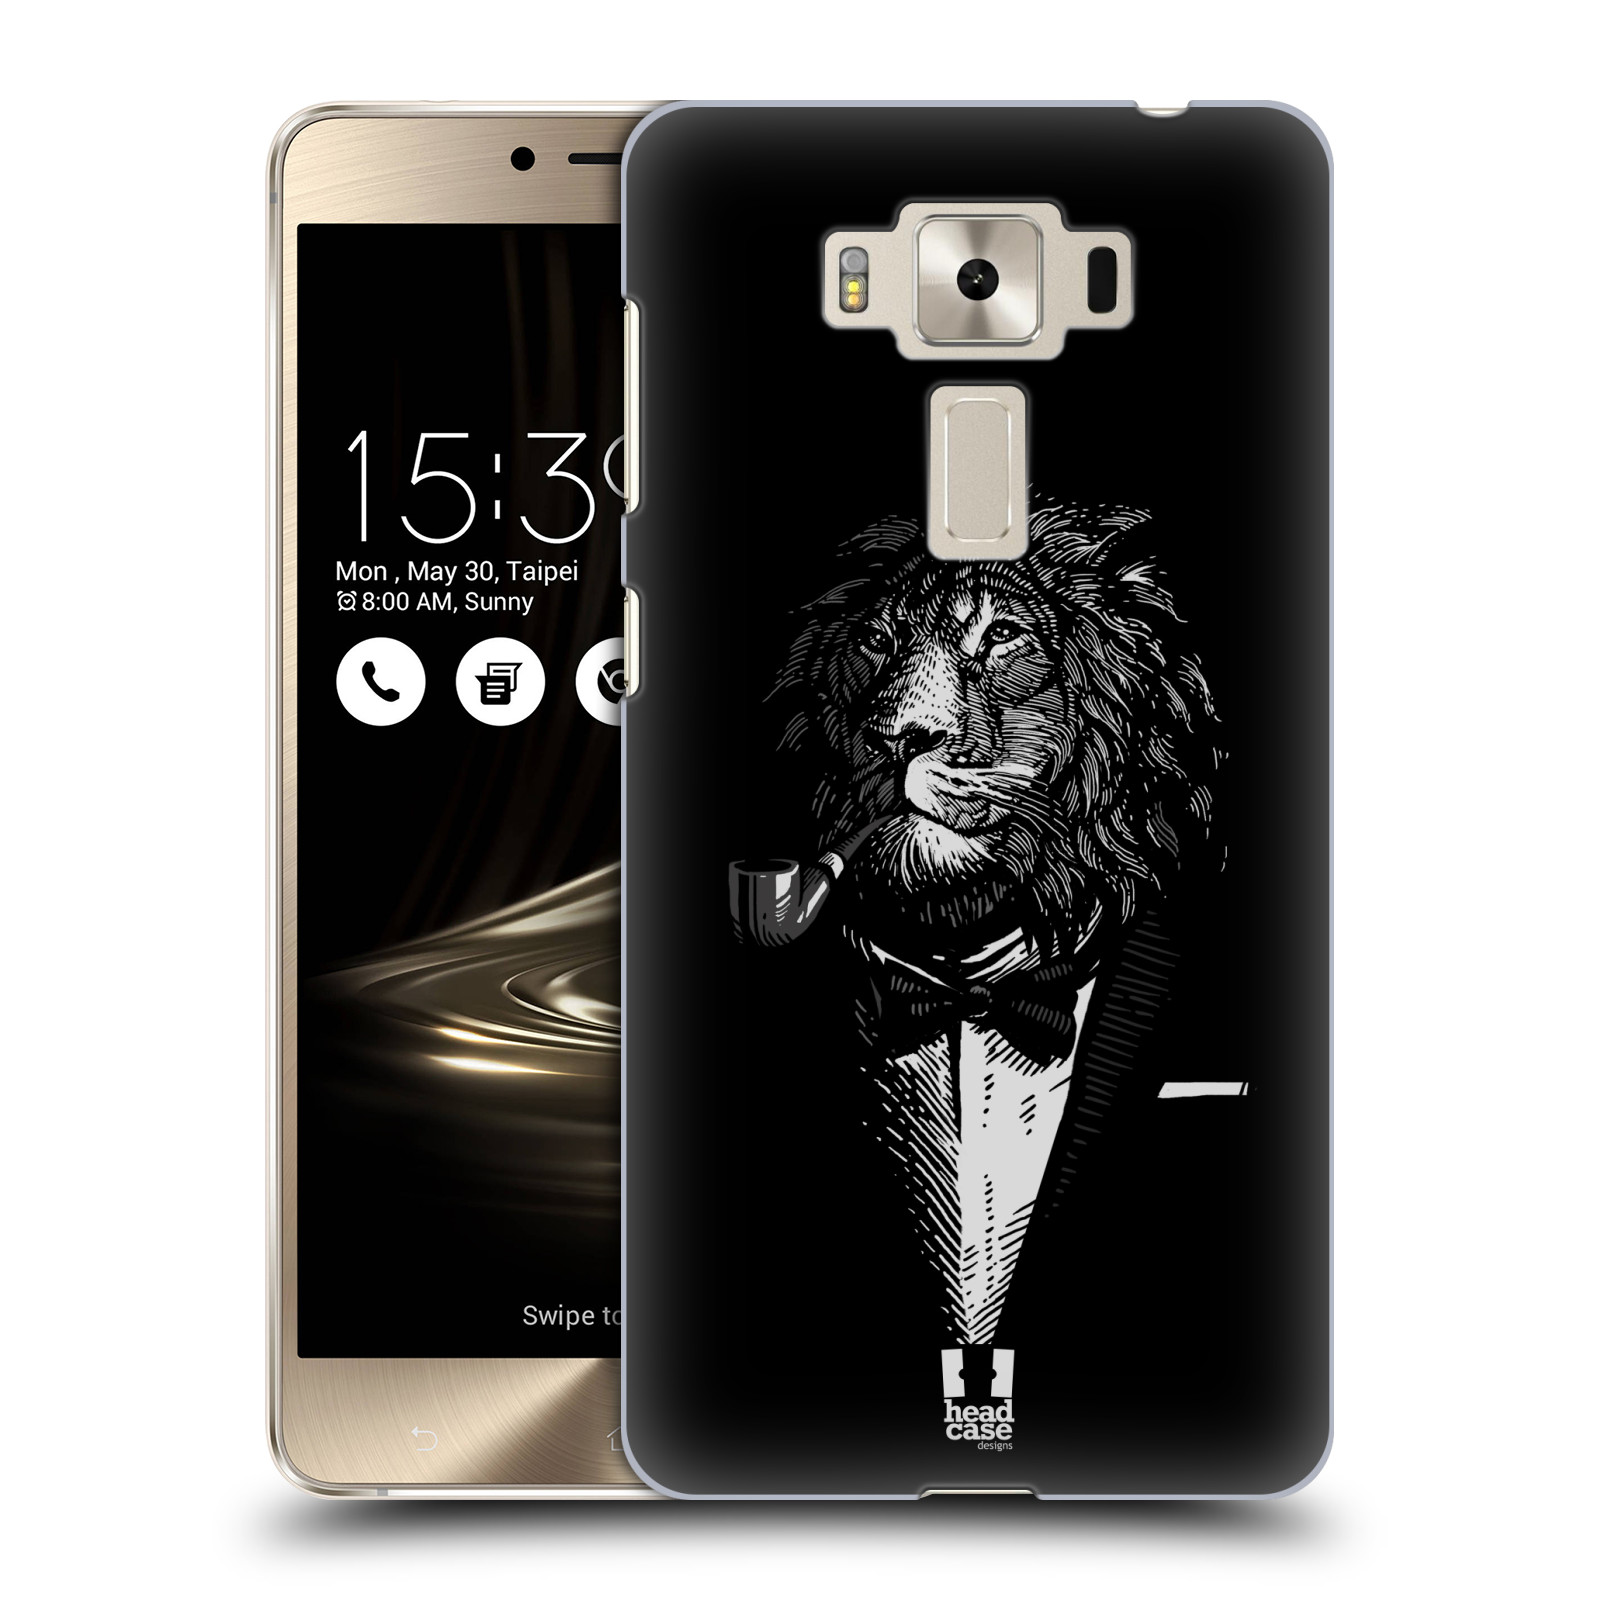 HEAD CASE plastový obal na mobil Asus Zenfone 3 DELUXE ZS550KL vzor Zvíře v obleku lev